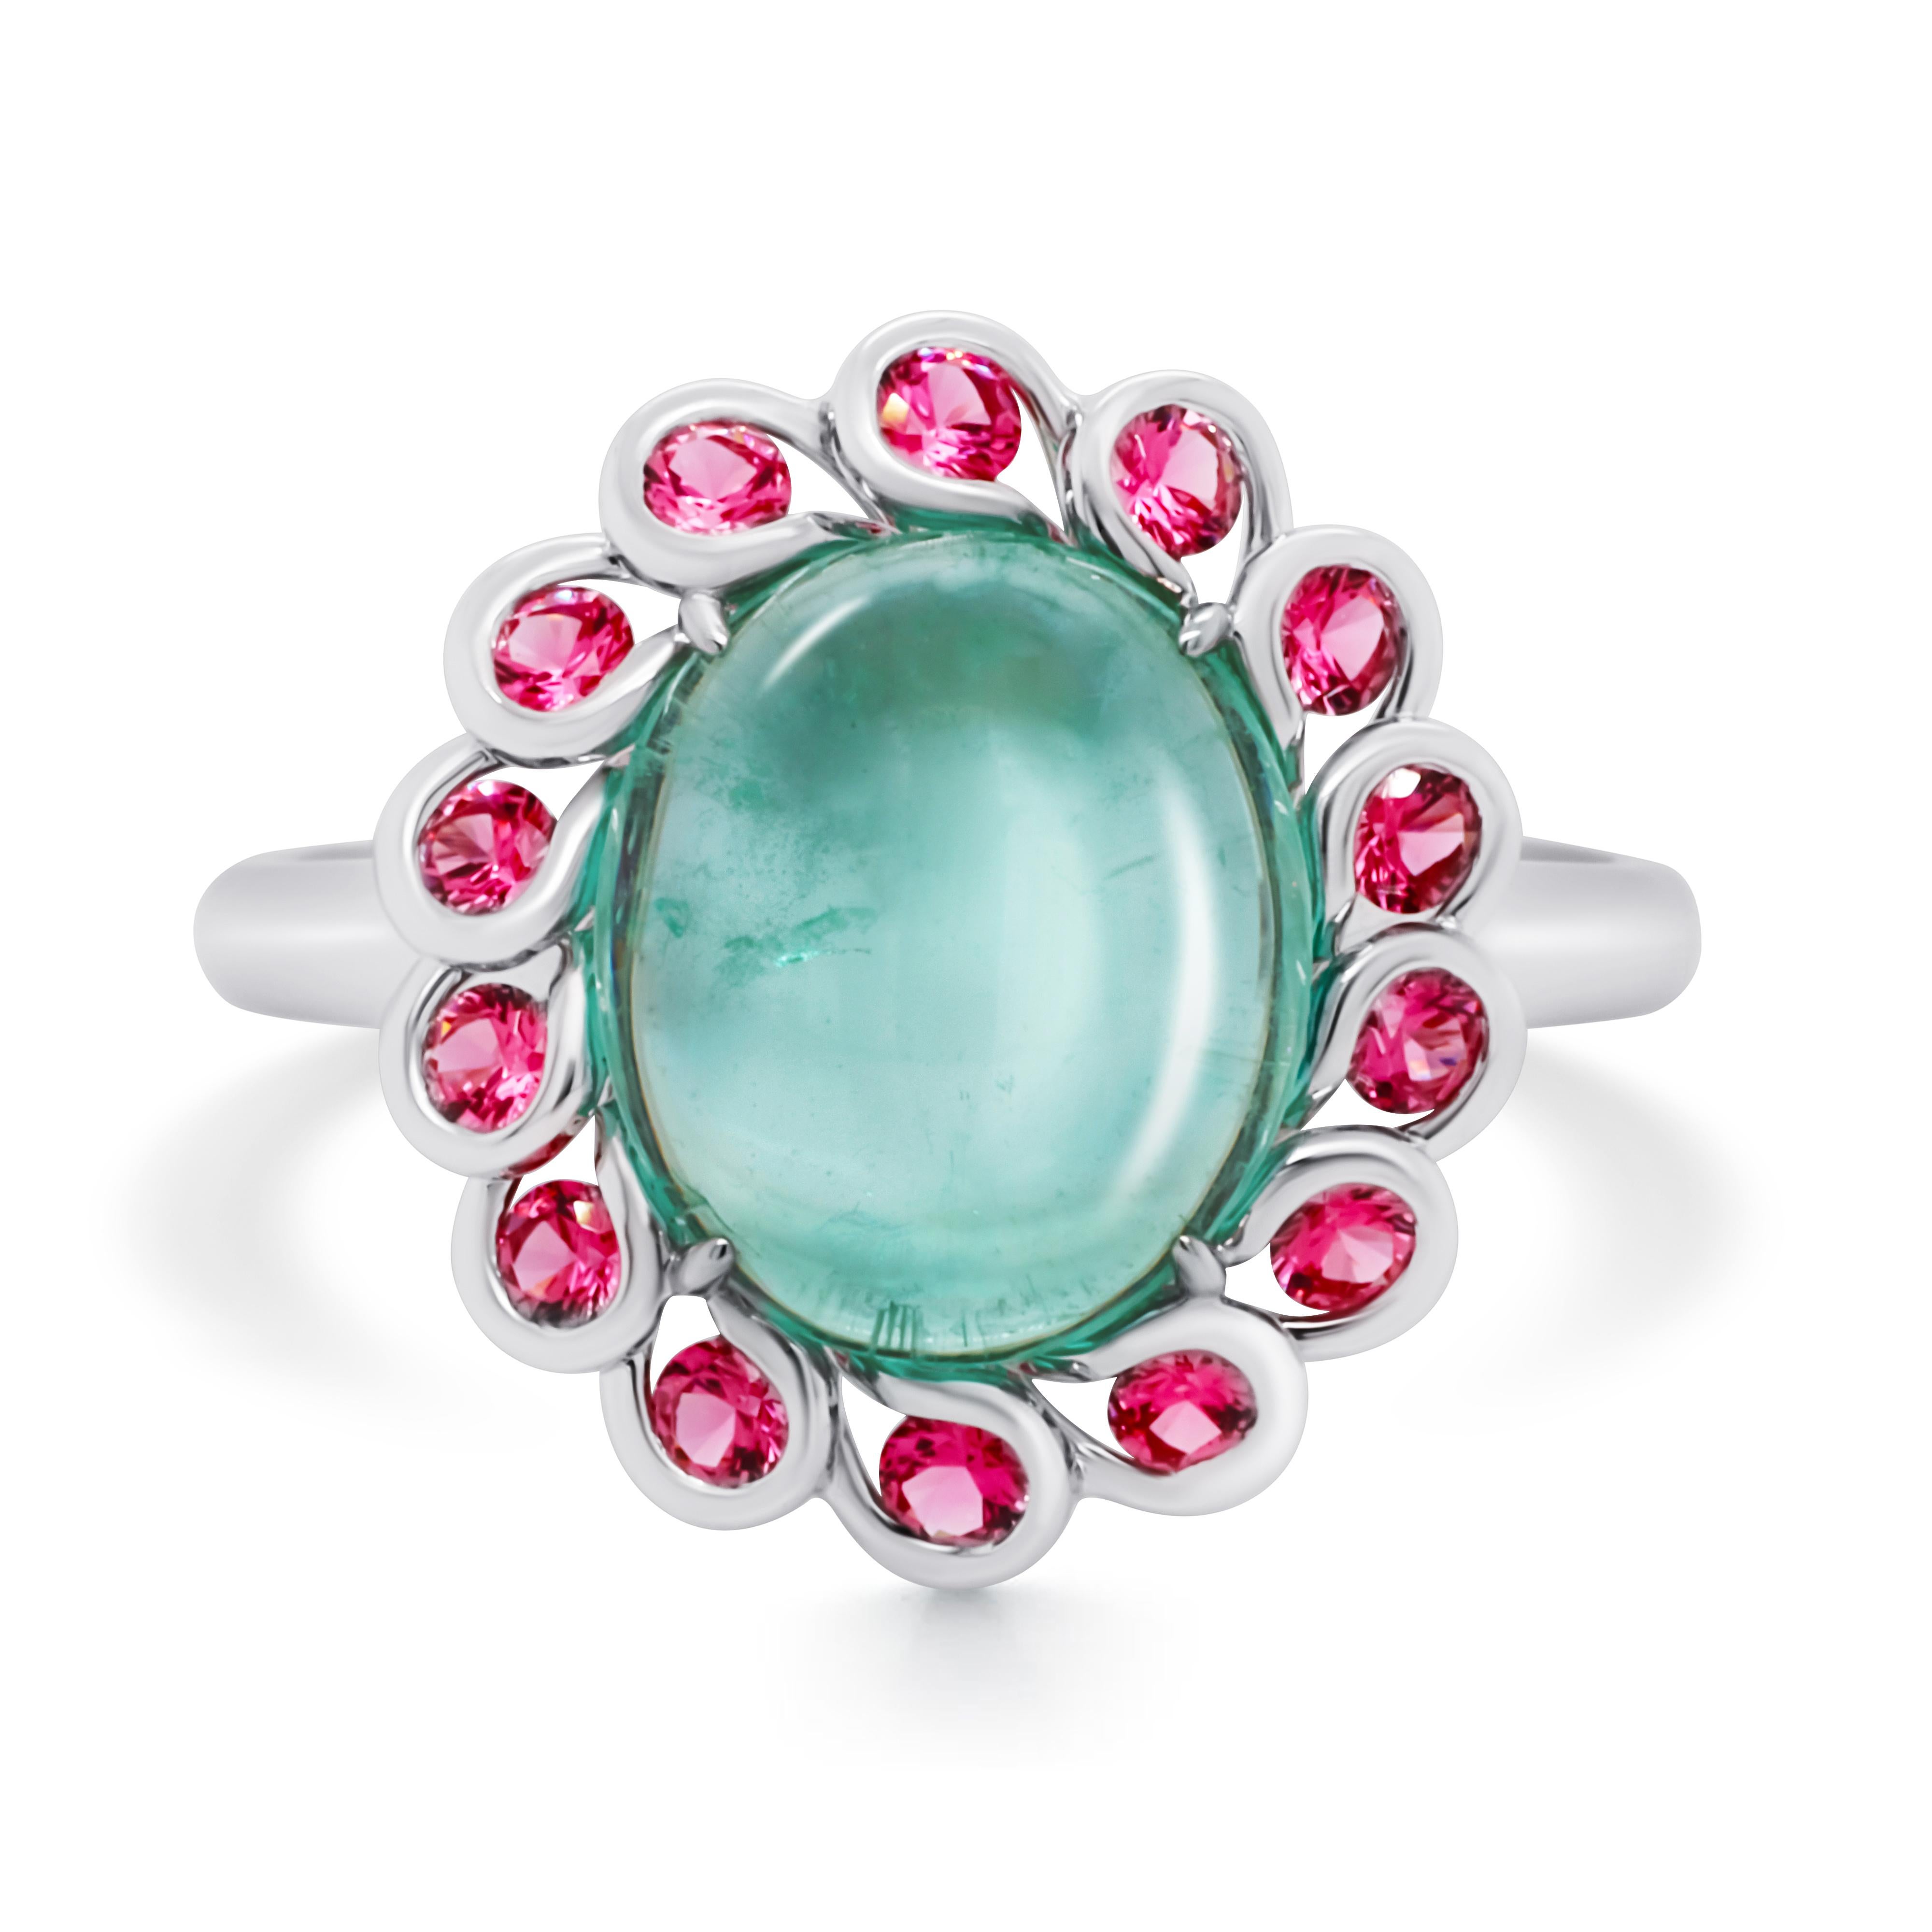 Ein verspielter Ring mit einem mintgrünen Smaragd-Cabochon in der Mitte und einem romantischen rosa Spinell als Akzent. 
Der Smaragd stammt aus dem malerischen Uralgebirge in Russland und hat eine sehr angenehme grüne Farbe. Die Spinelle, die um den